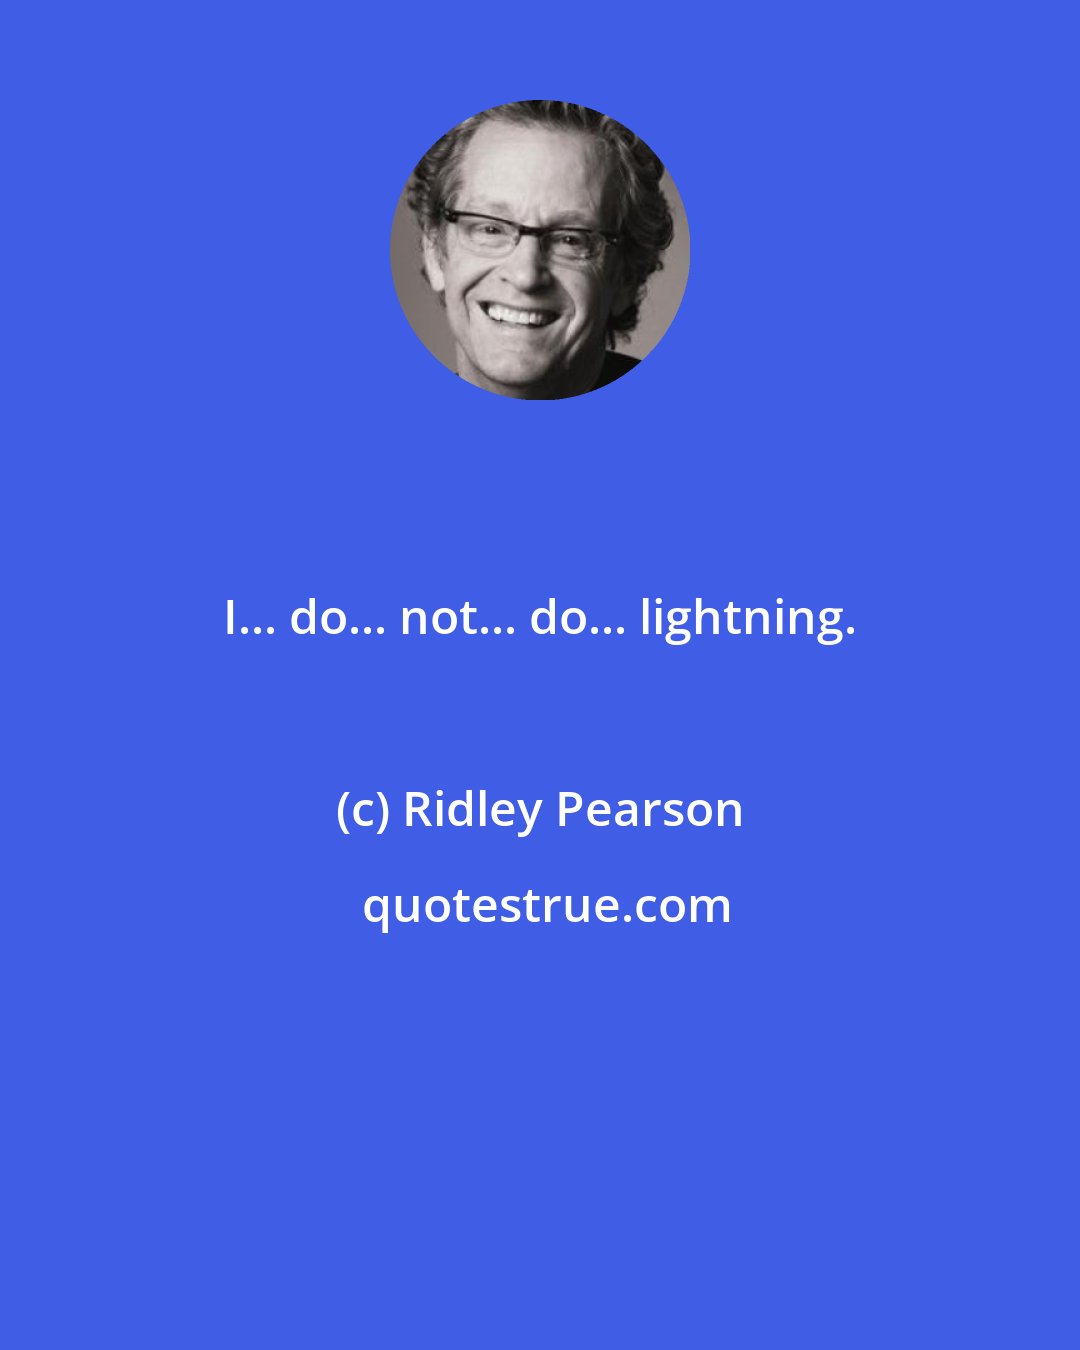 Ridley Pearson: I... do... not... do... lightning.